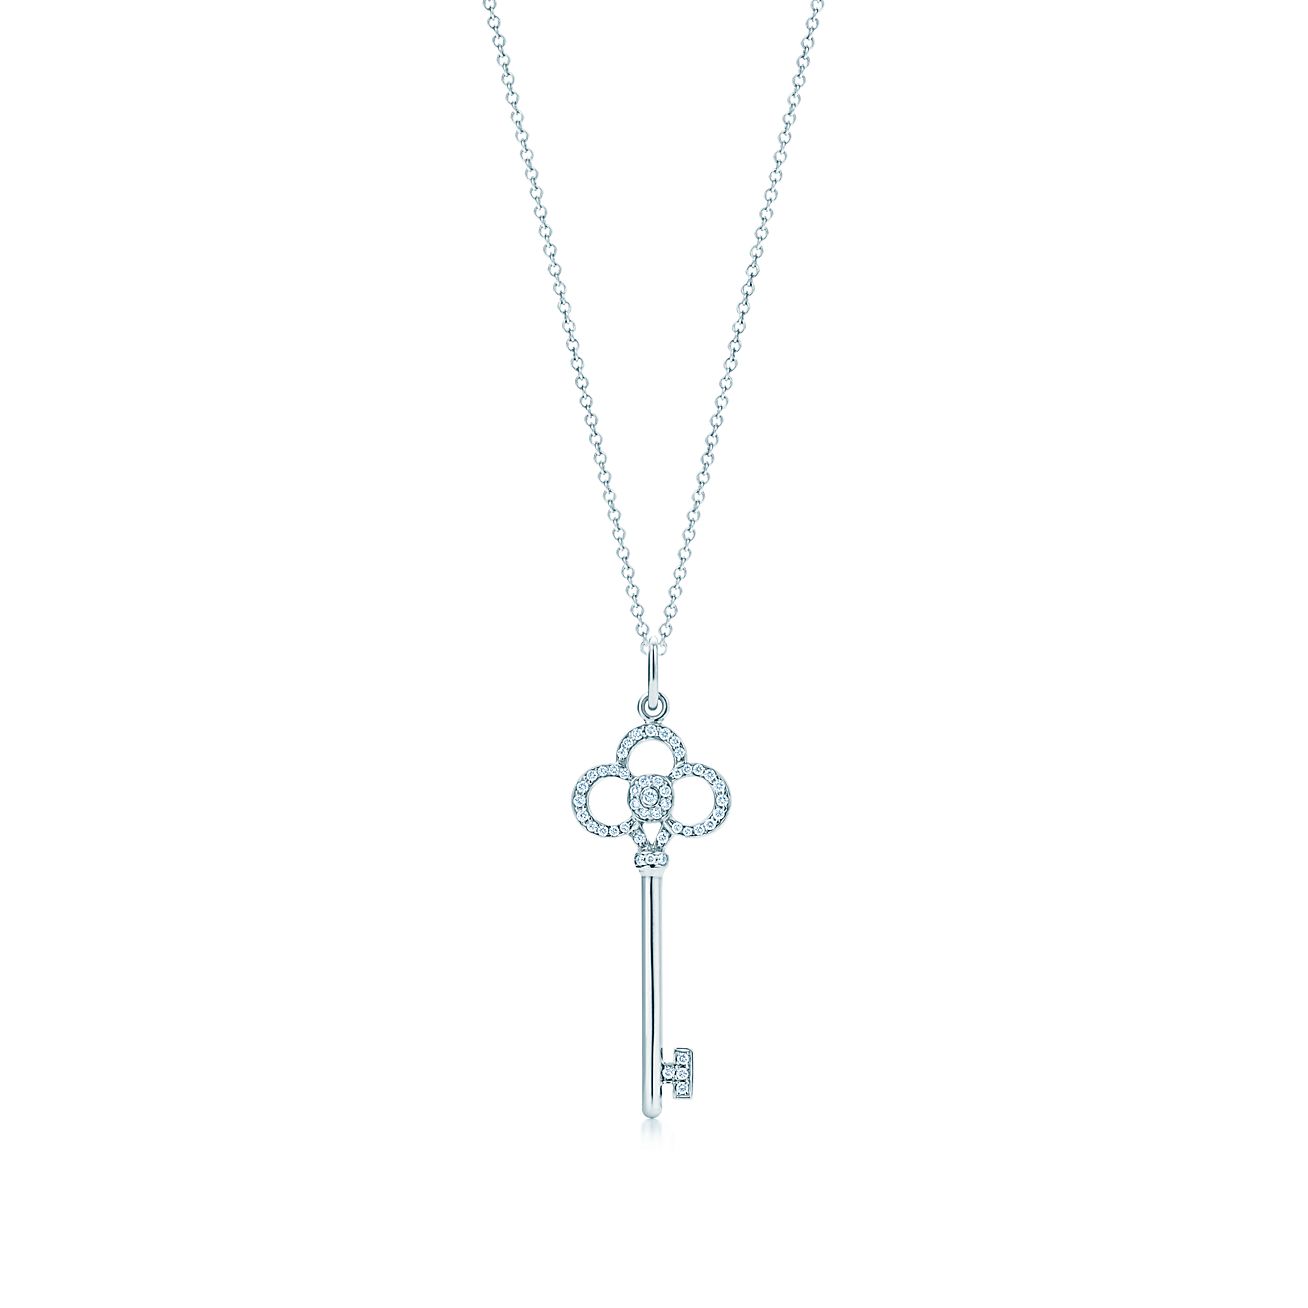 tiffany keys necklace